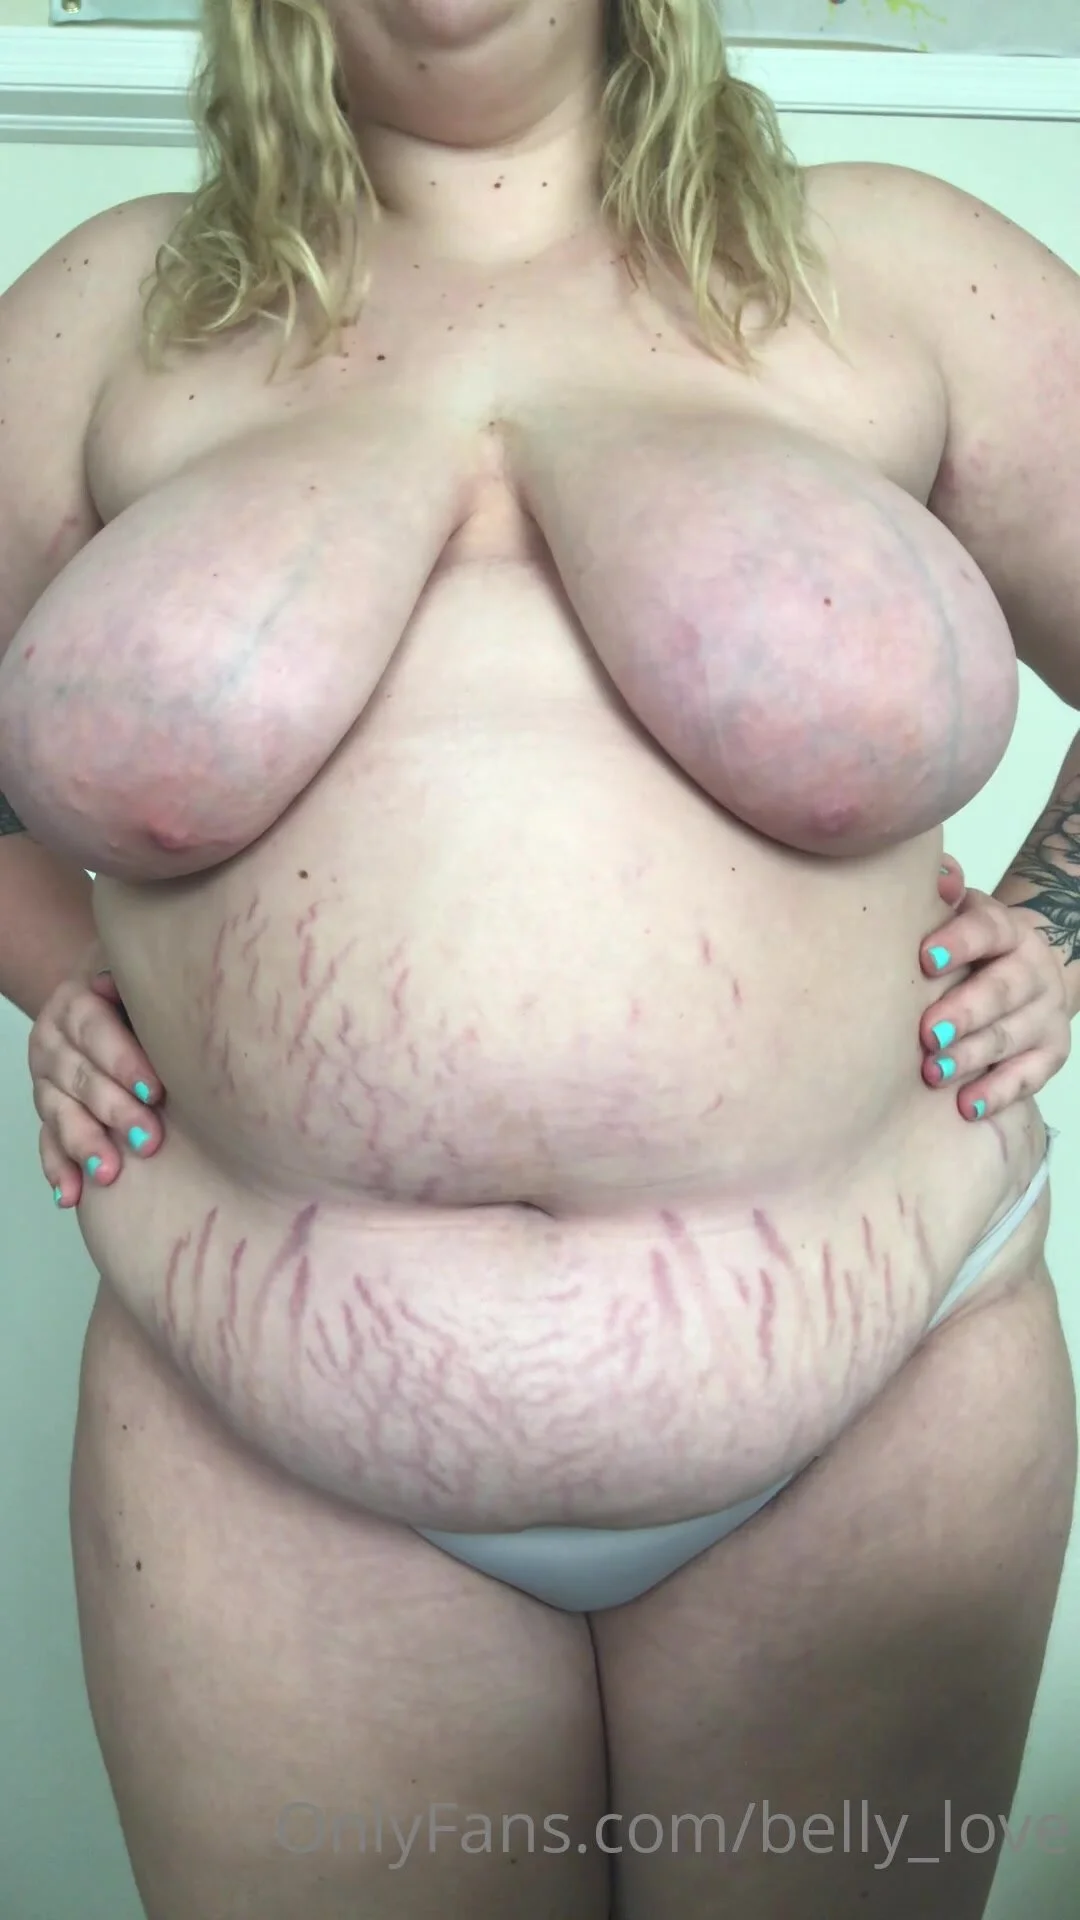 Hd Bbw Fat Girl - Fat girl stretch marks 4 - ThisVid.com